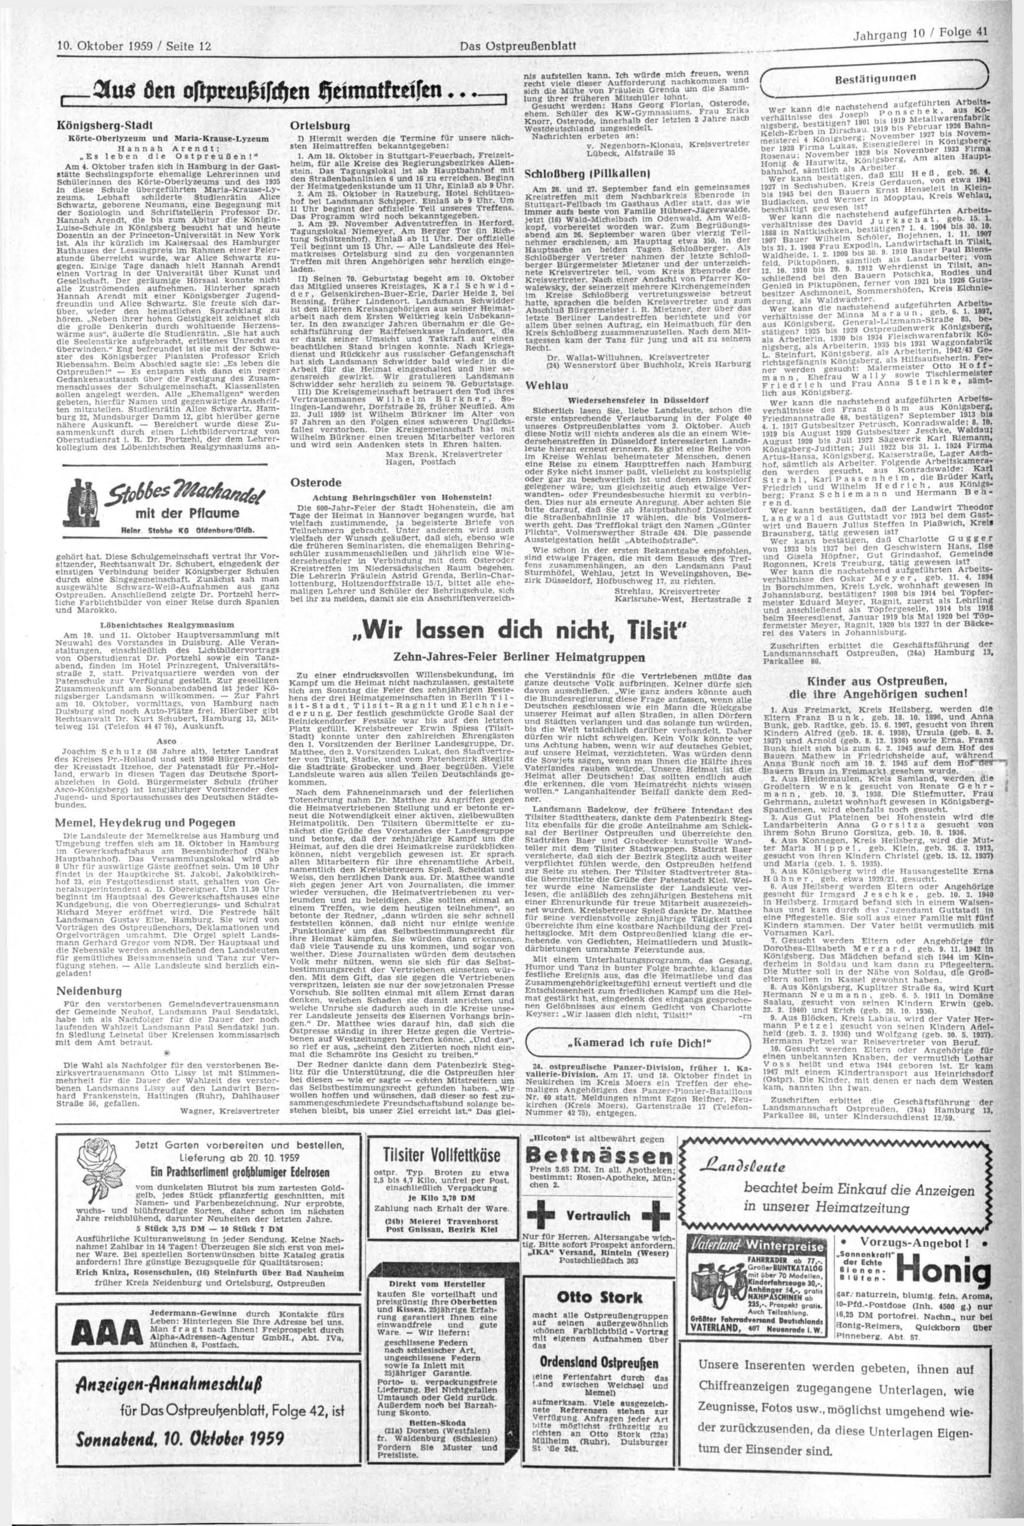 10. Oktober 1959 / Seite 12 Das Ostpreußenblatt 3uä öen oftpteujhfrffen fjeimotfteifen - mit der Pflaume Helnr Stobhe KG Oldenbura/Oldb. gehört hat.